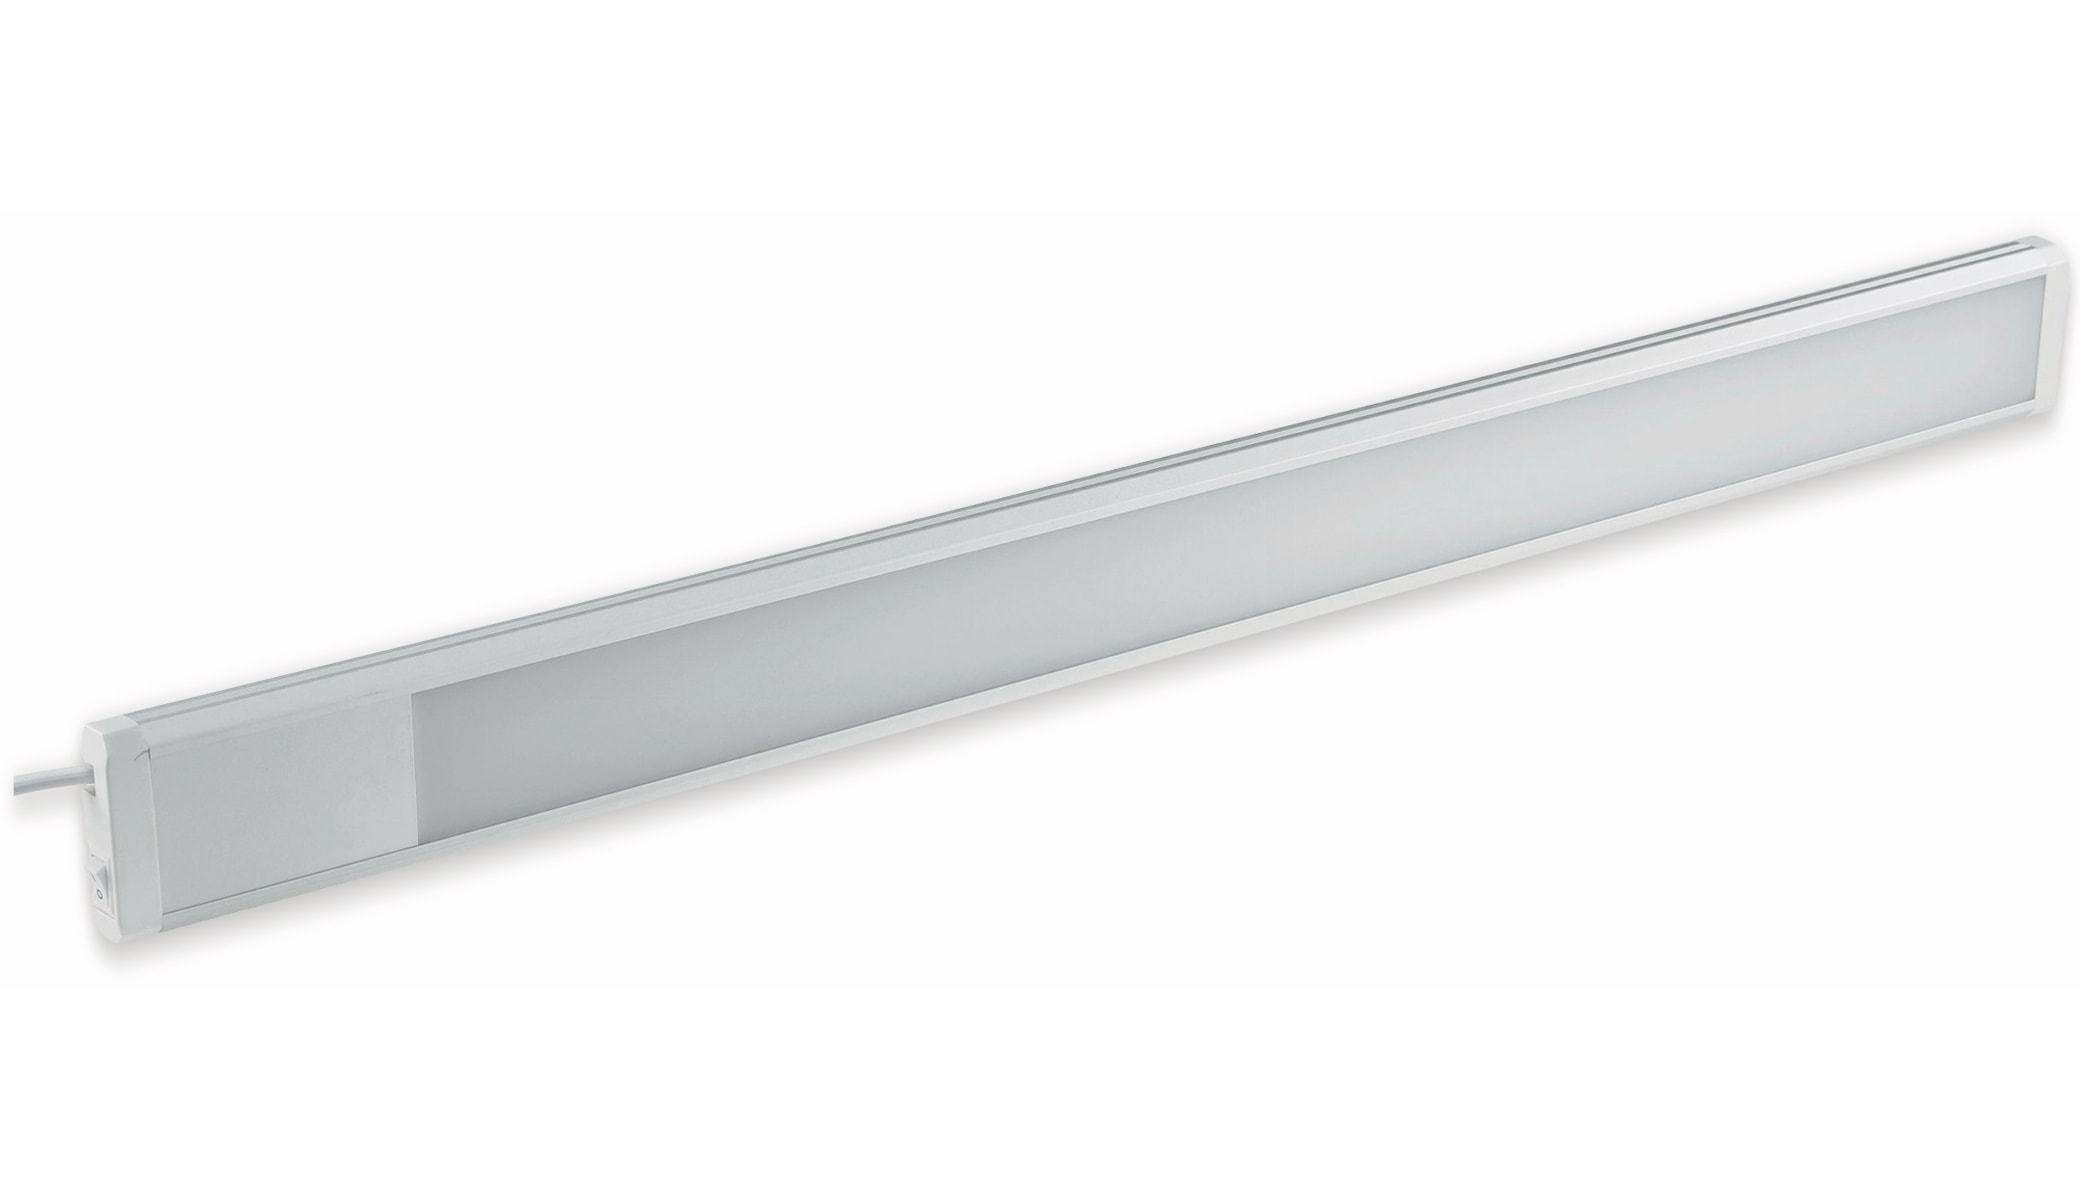 CHILITEC LED-Unterbauleuchte Comprido 600, 3000K, 10 W, 230 V